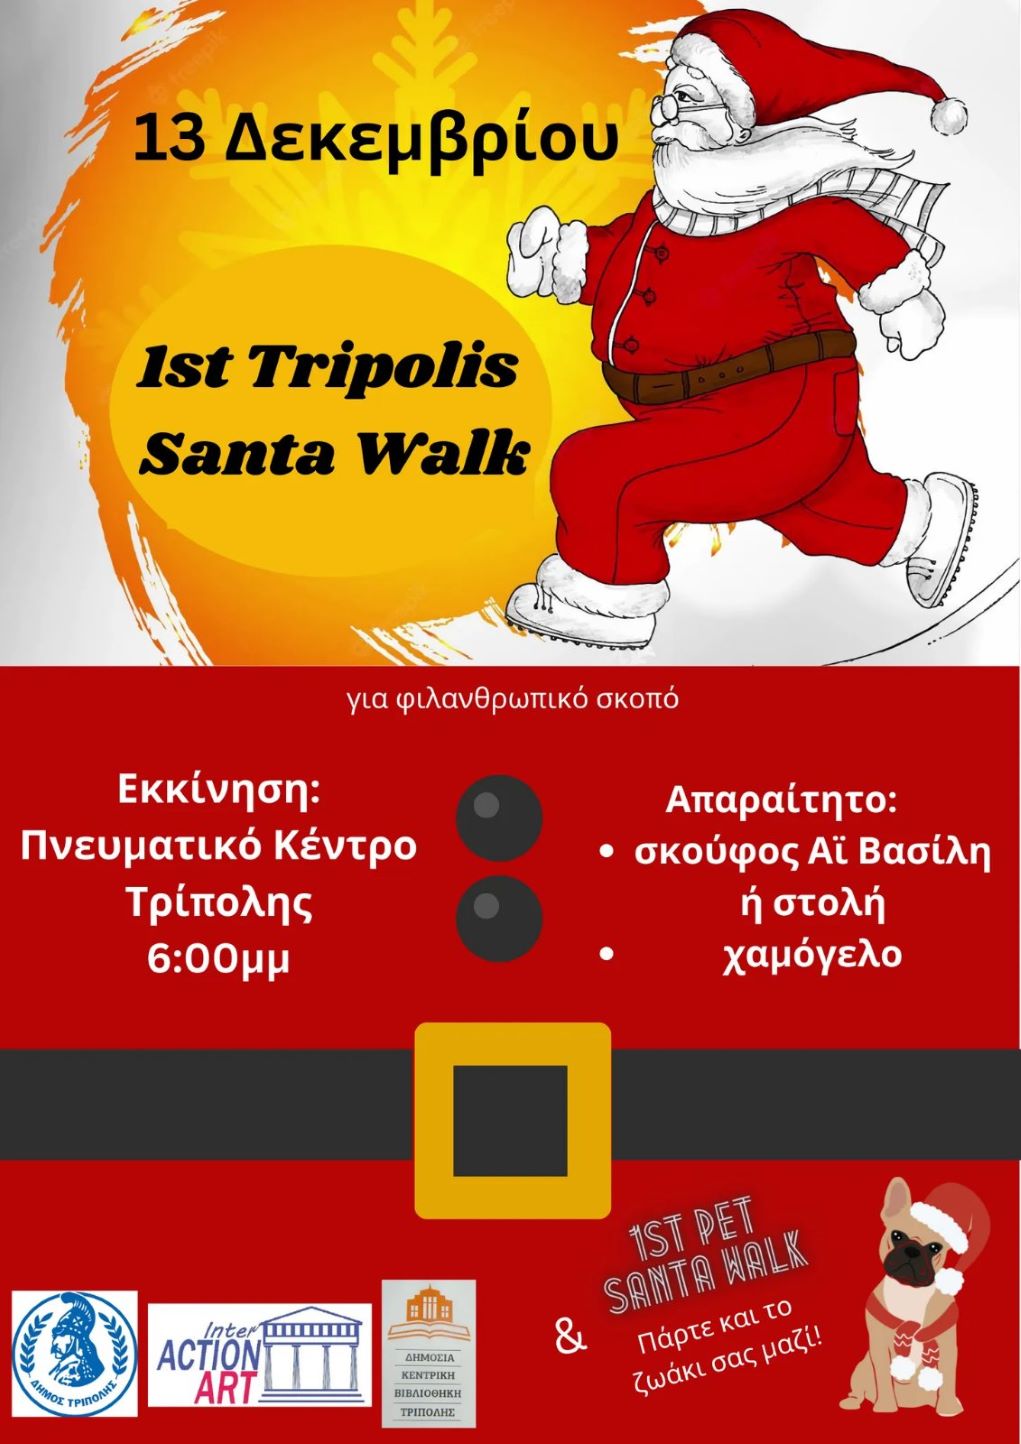 Την Τρίτη 13 Δεκεμβρίου το 1ο Santa Walk της Τρίπολης